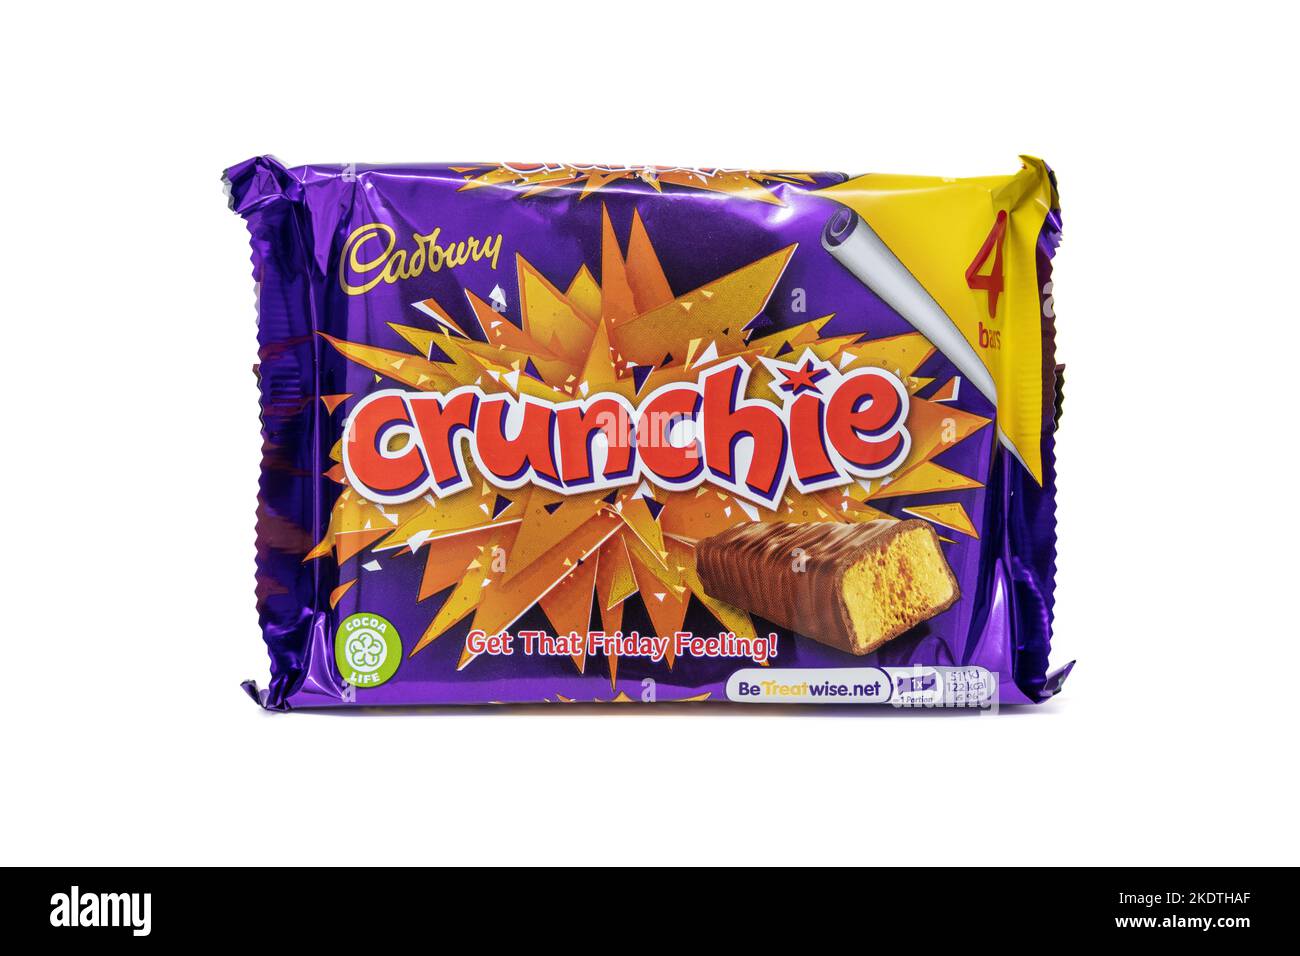 Cadbury Crunchie Chocolate Bar 4 Pack Stock Photo